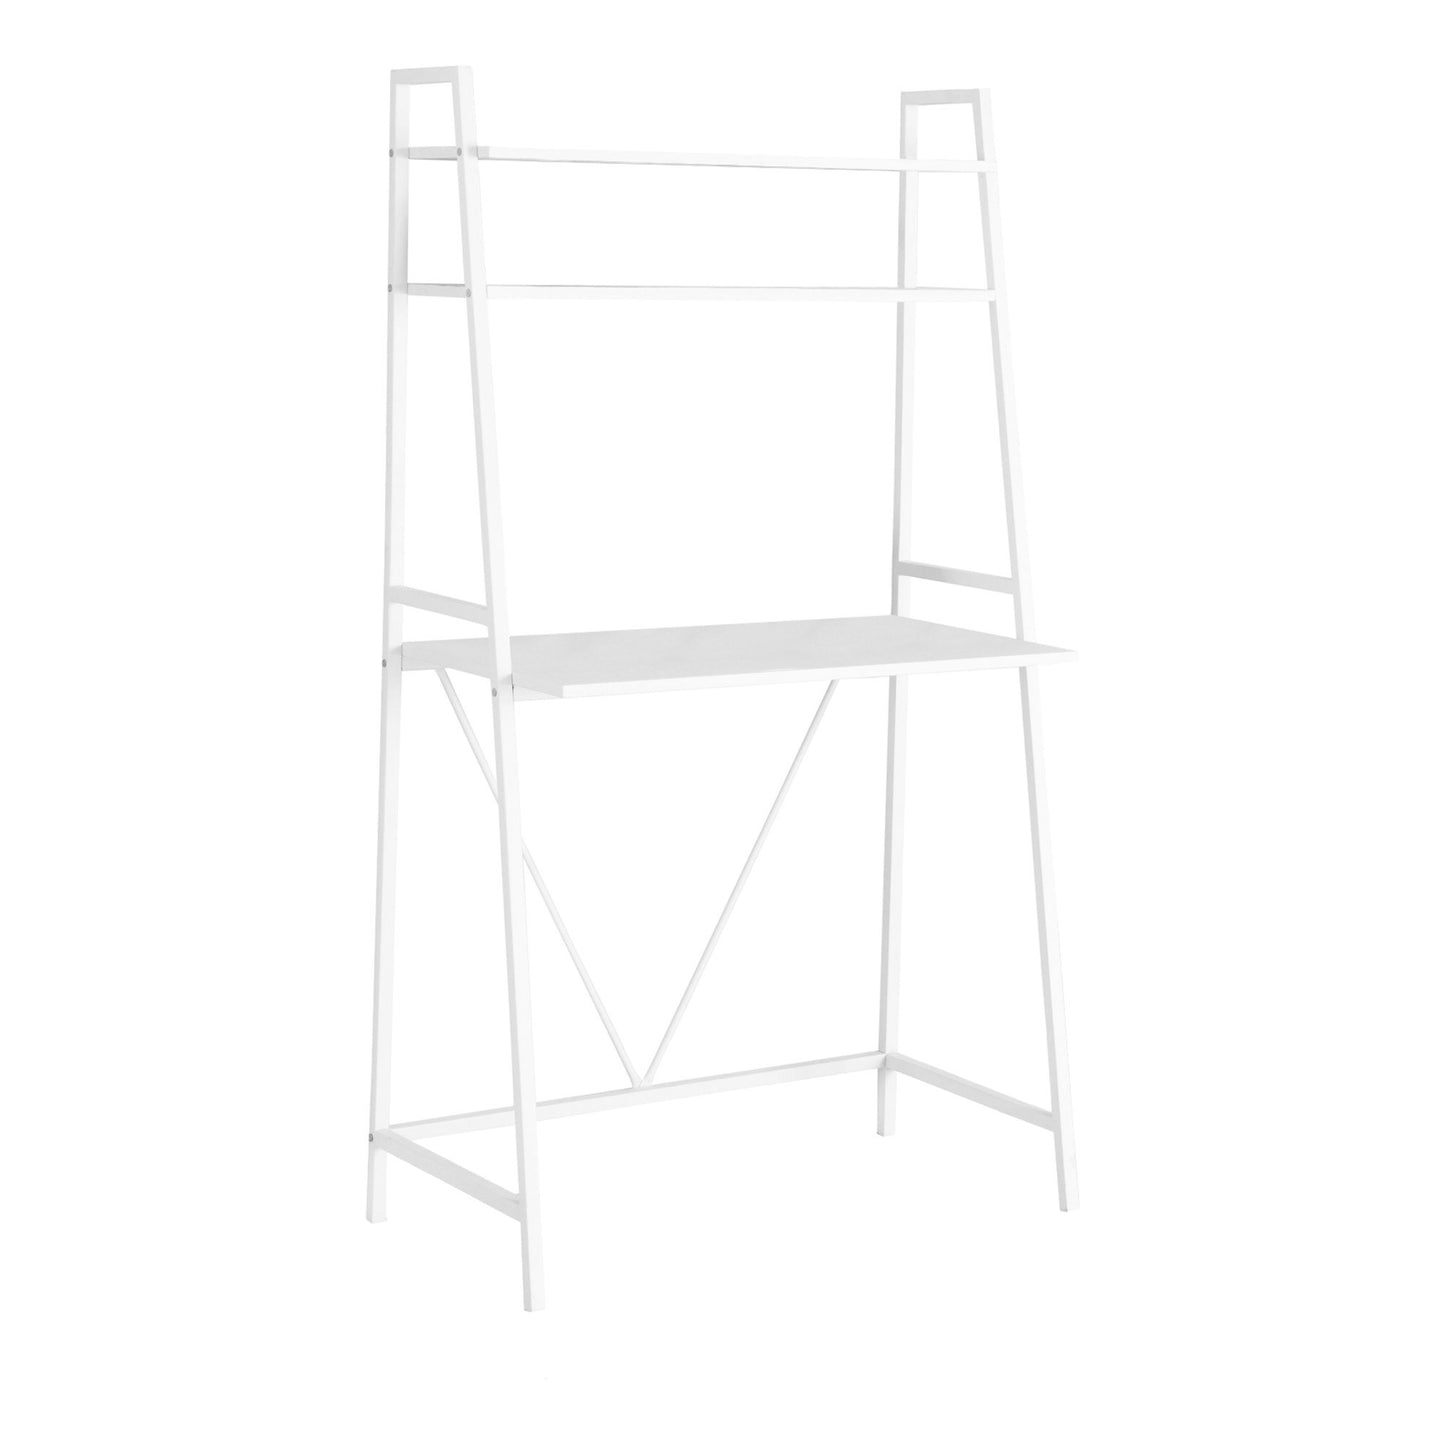 18" White Rectangular Ladder Desk